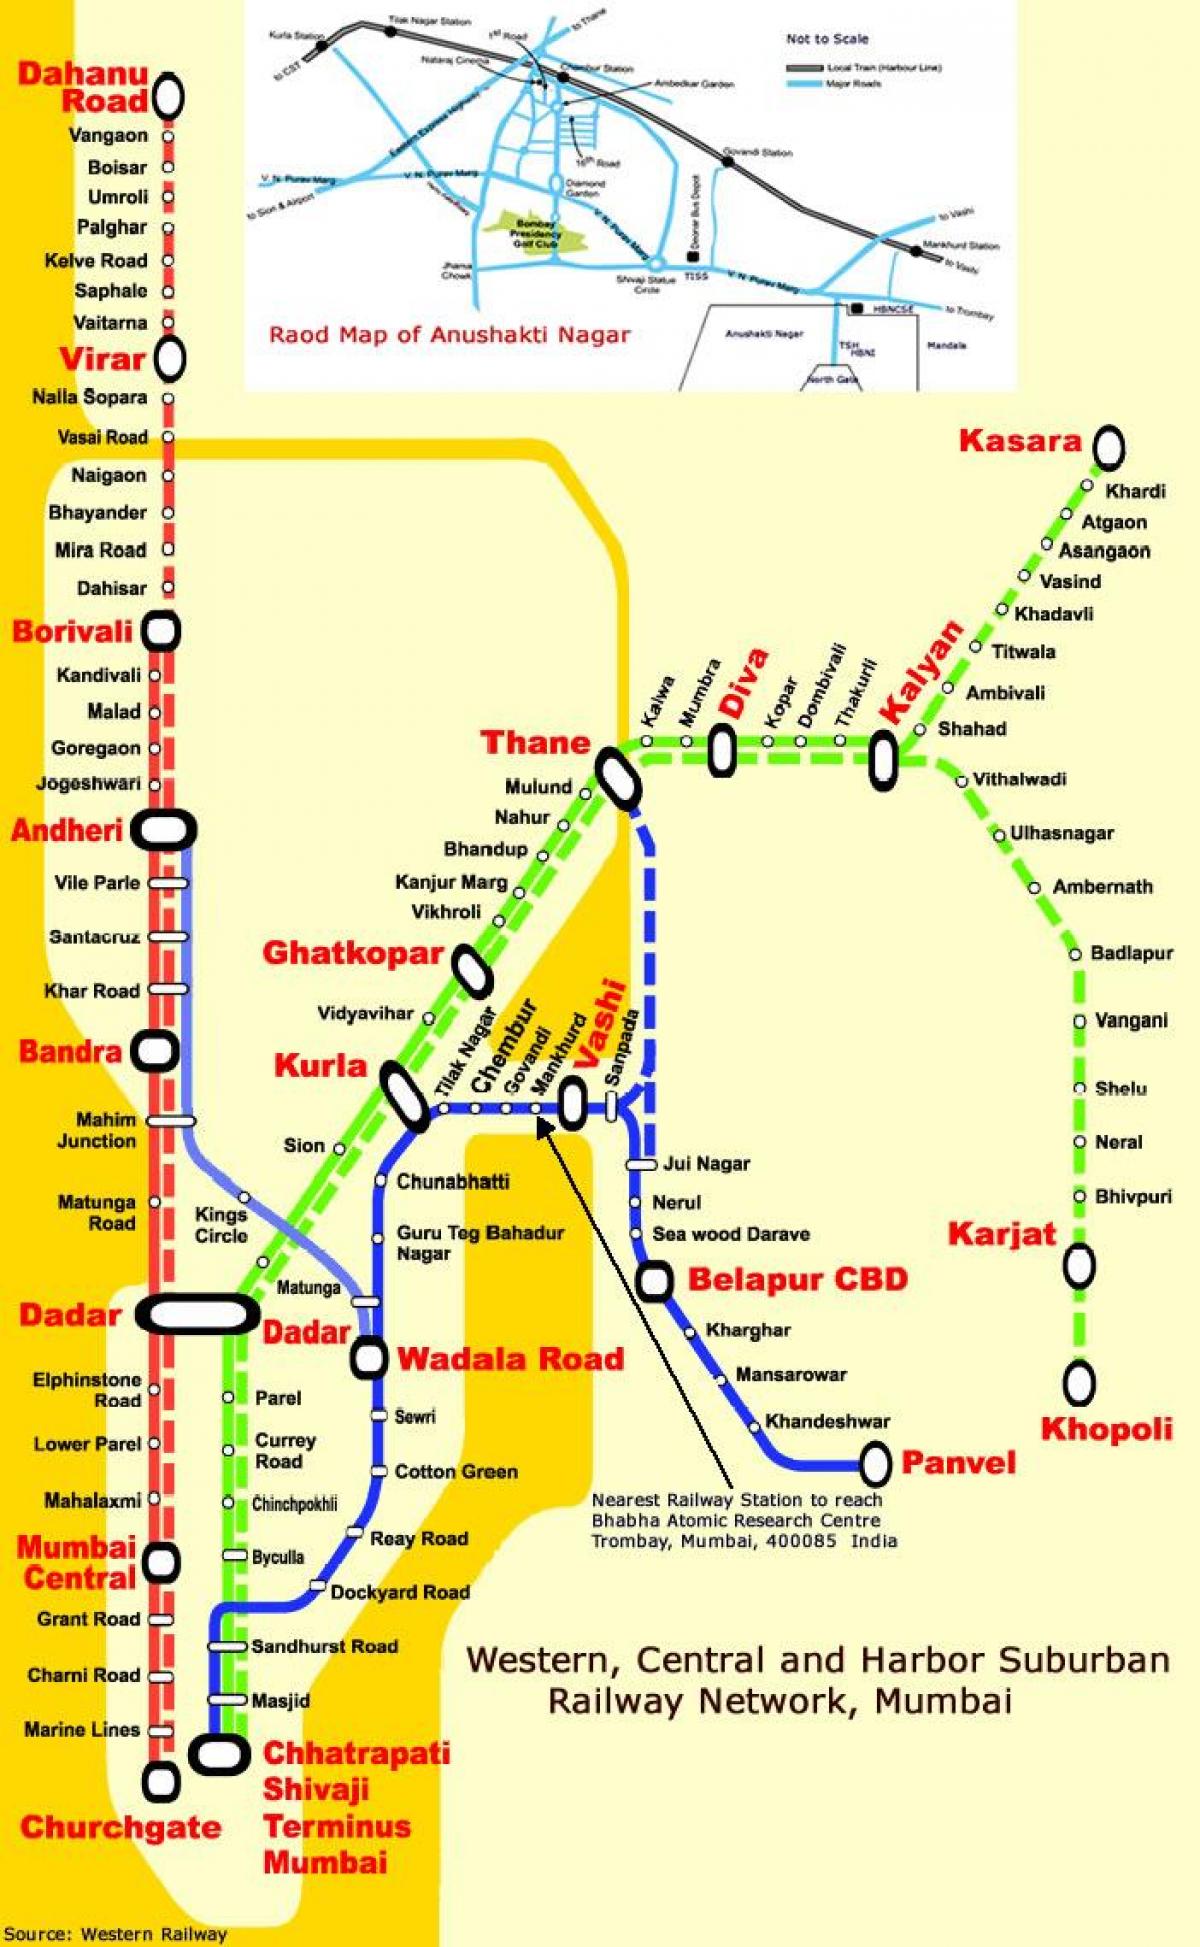 मुंबई सेंट्रल लाइन के स्टेशनों के नक्शे